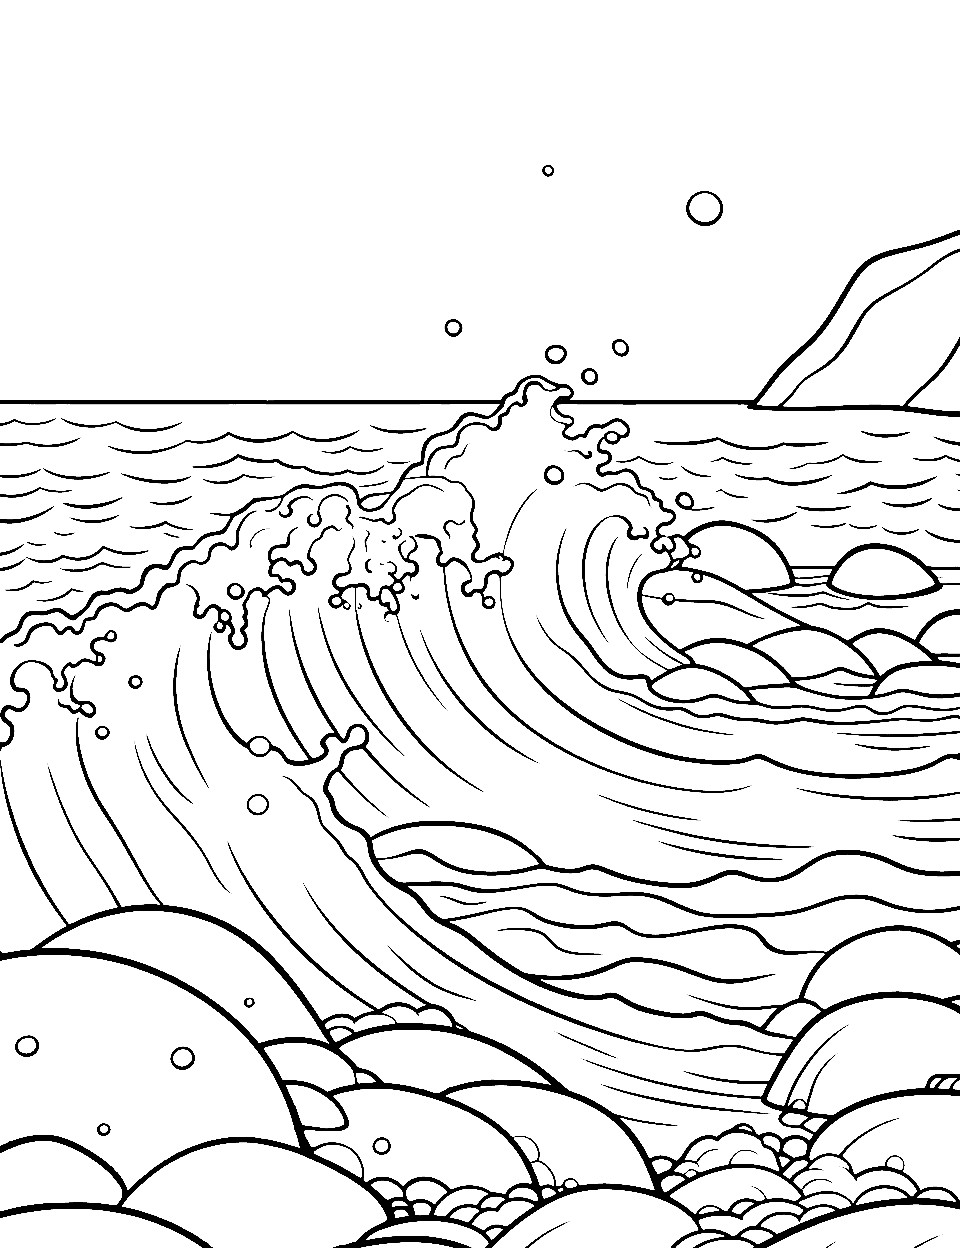 Ocean Waves Crashing on Rocks Coloring Page - Waves crashing against large rocks.